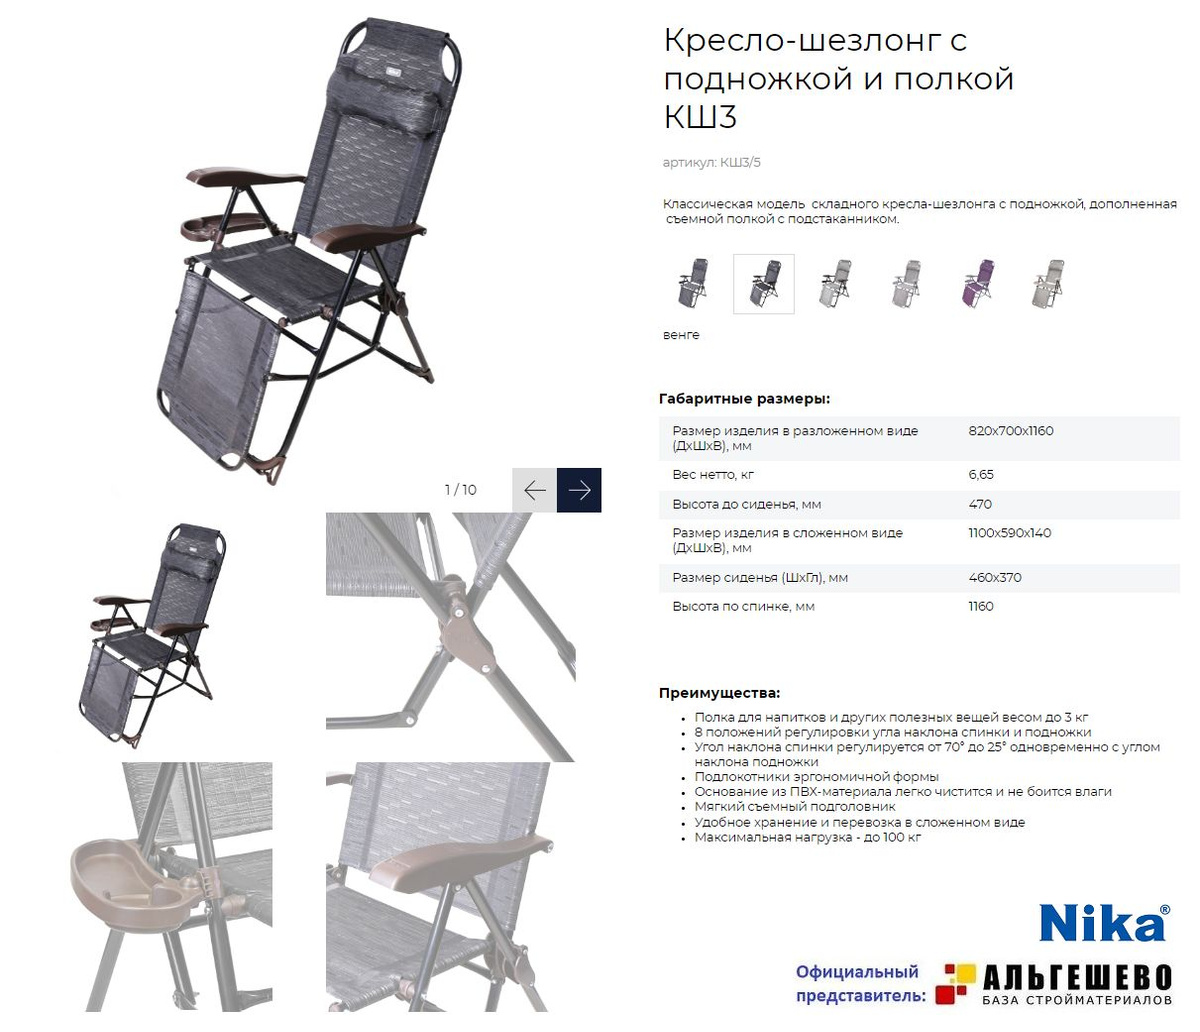 Складное кресло-шезлонг для комфортного отдыха на открытом воздухе и в помещении.